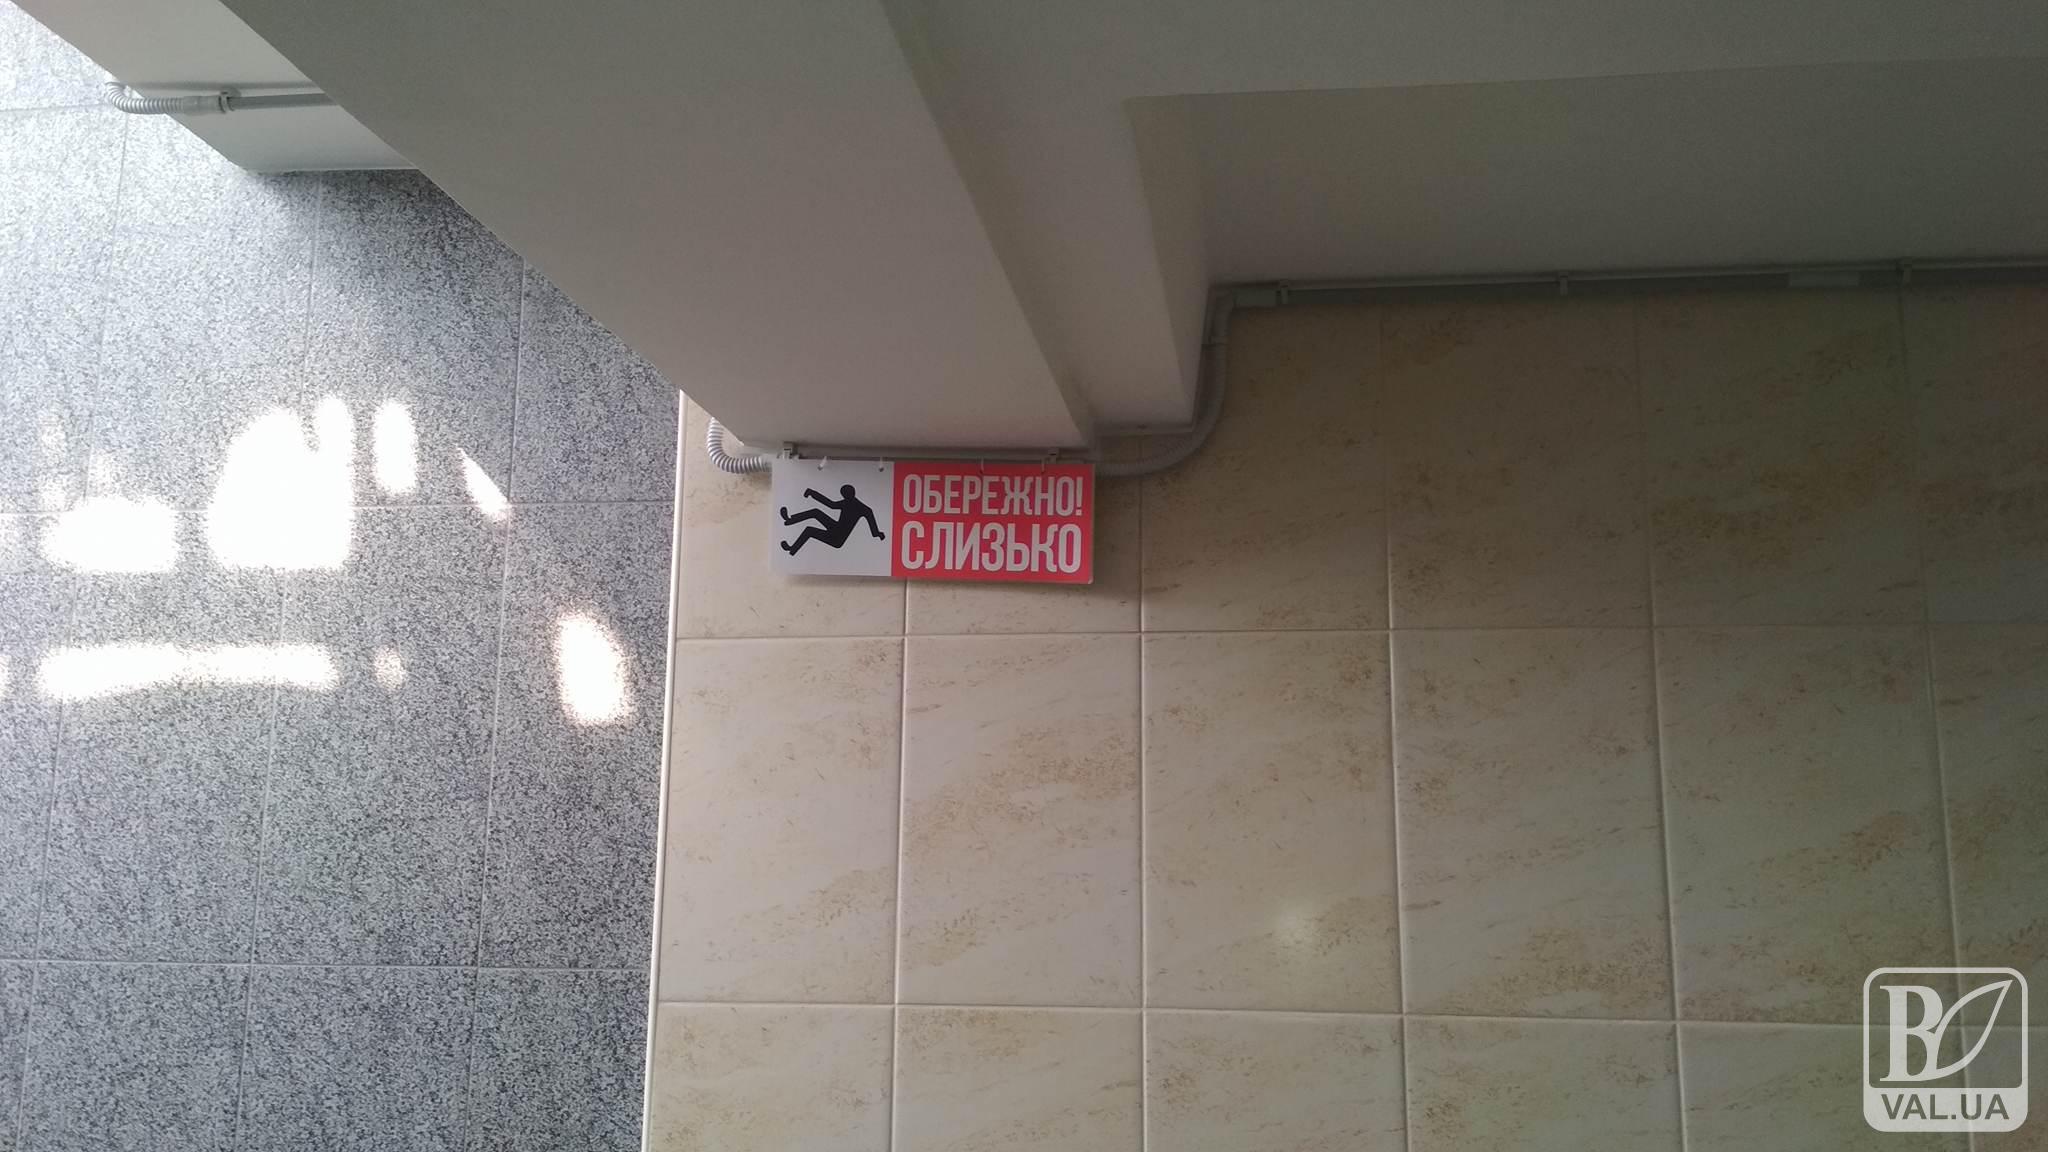 В чернігівській підземній «ковзанці» повісили відповідні попередження. ФОТОфакт